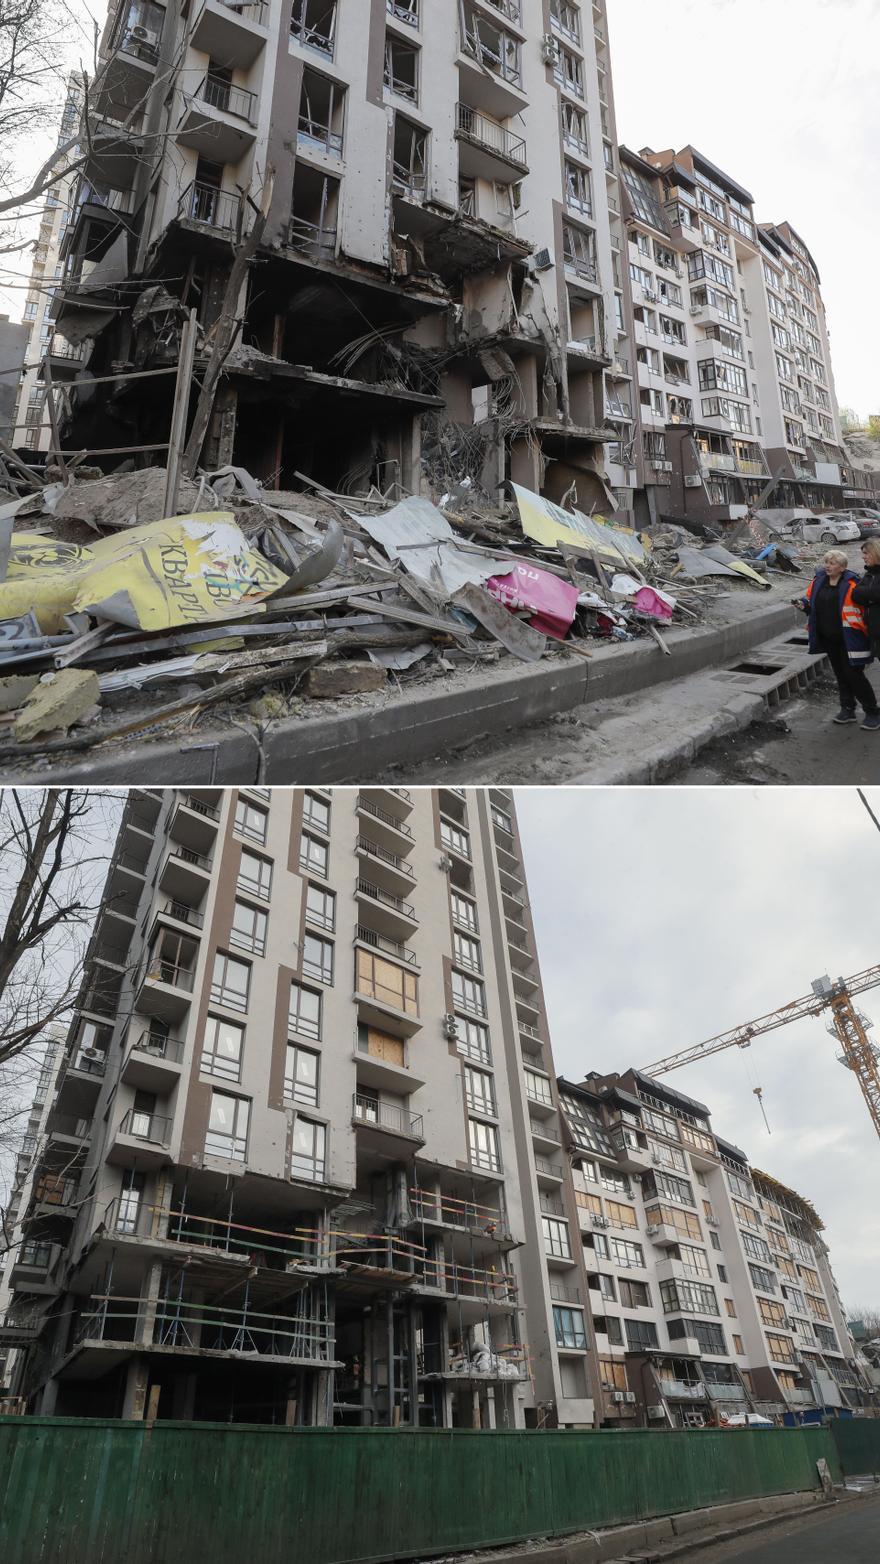 GALERIA | L'abans i el després de la guerra a Ucraïna